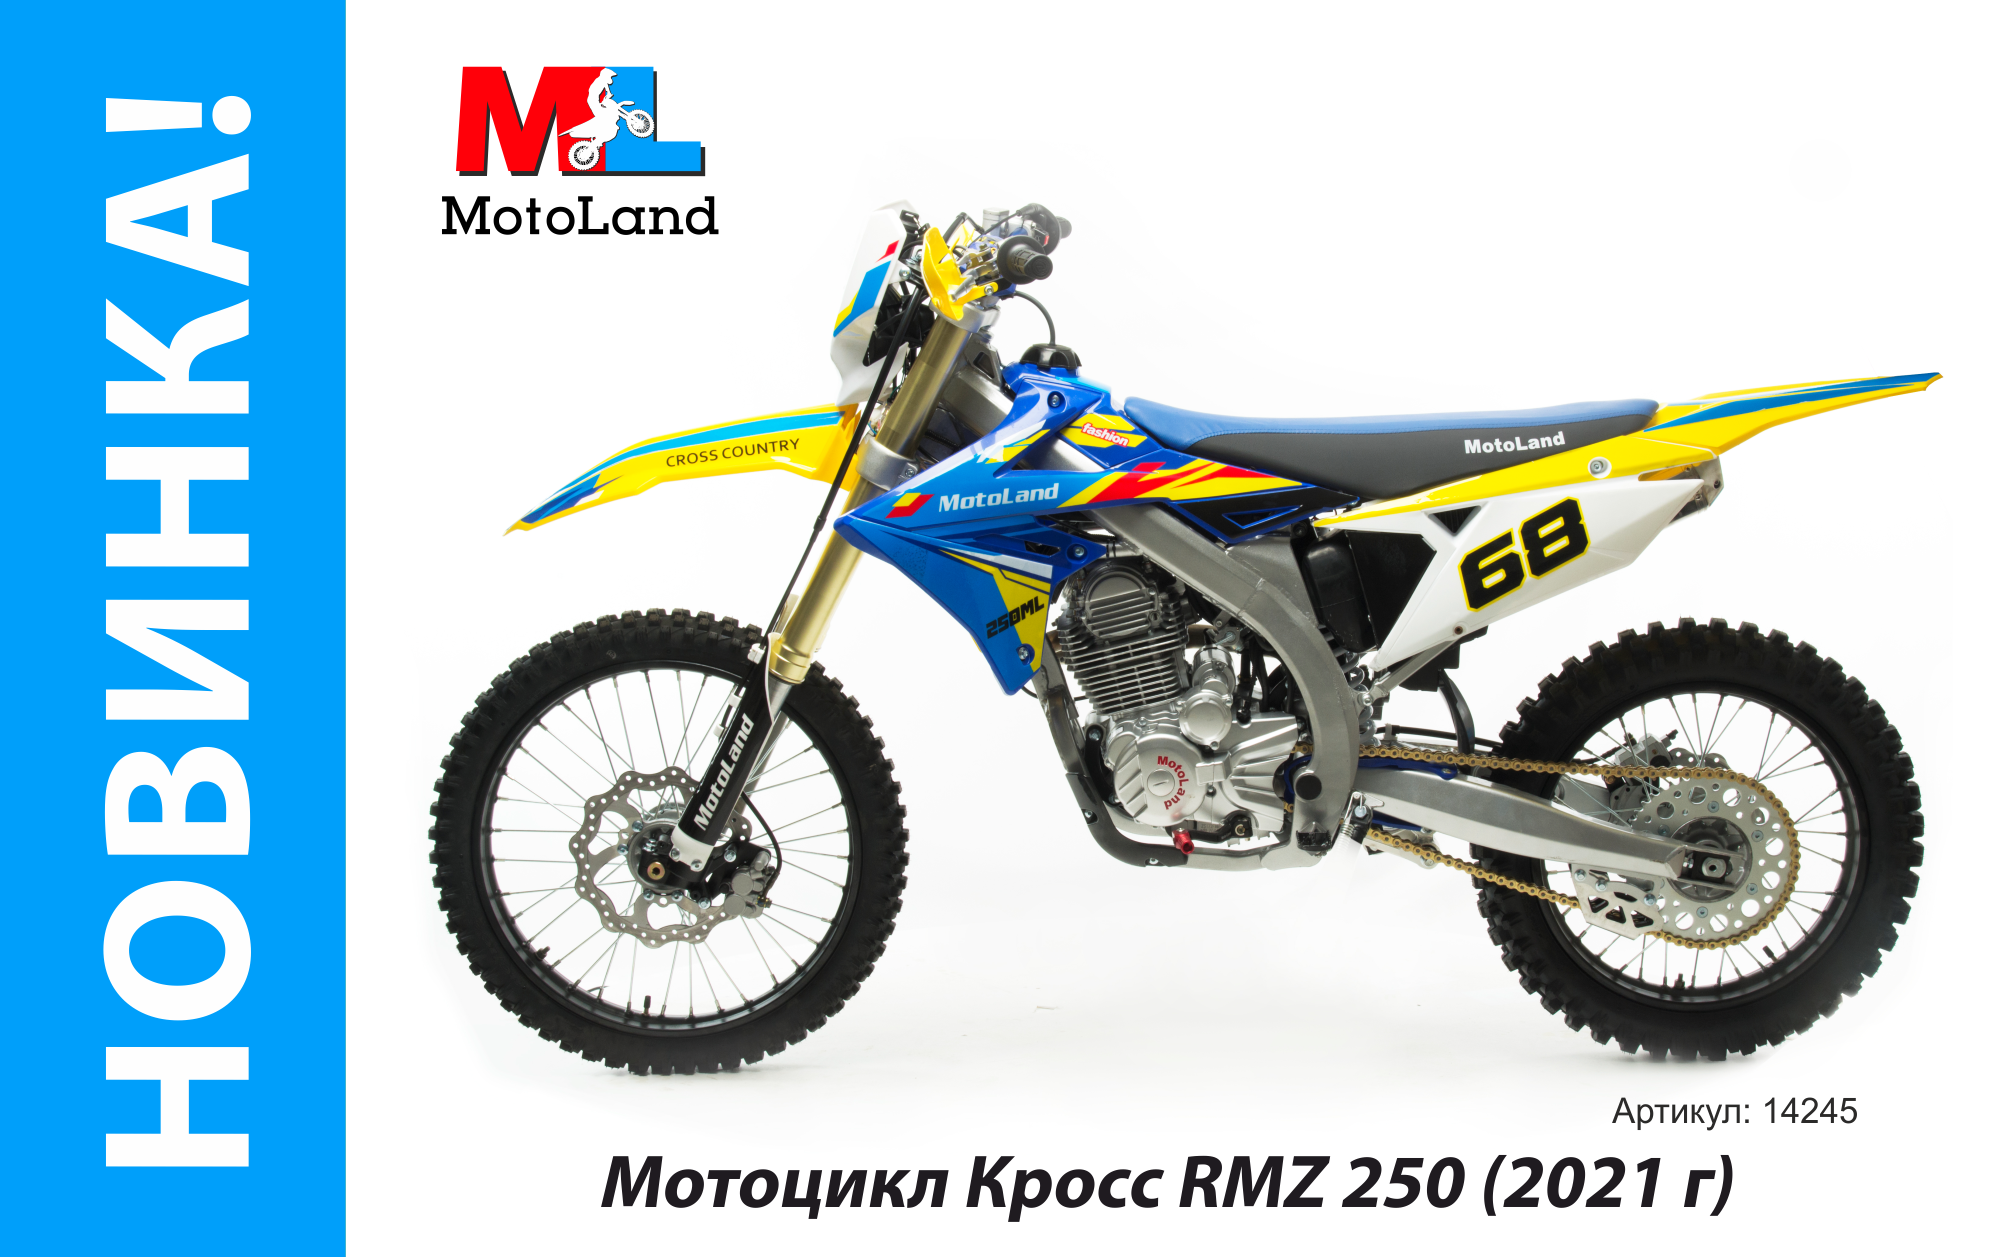 Motoland shop ru. Motoland RMZ 250. Мотолэнд RMZ 250. Motoland RMZ 250 2021. Мотоцикл кросс Motoland RMZ 250 (172fmm).